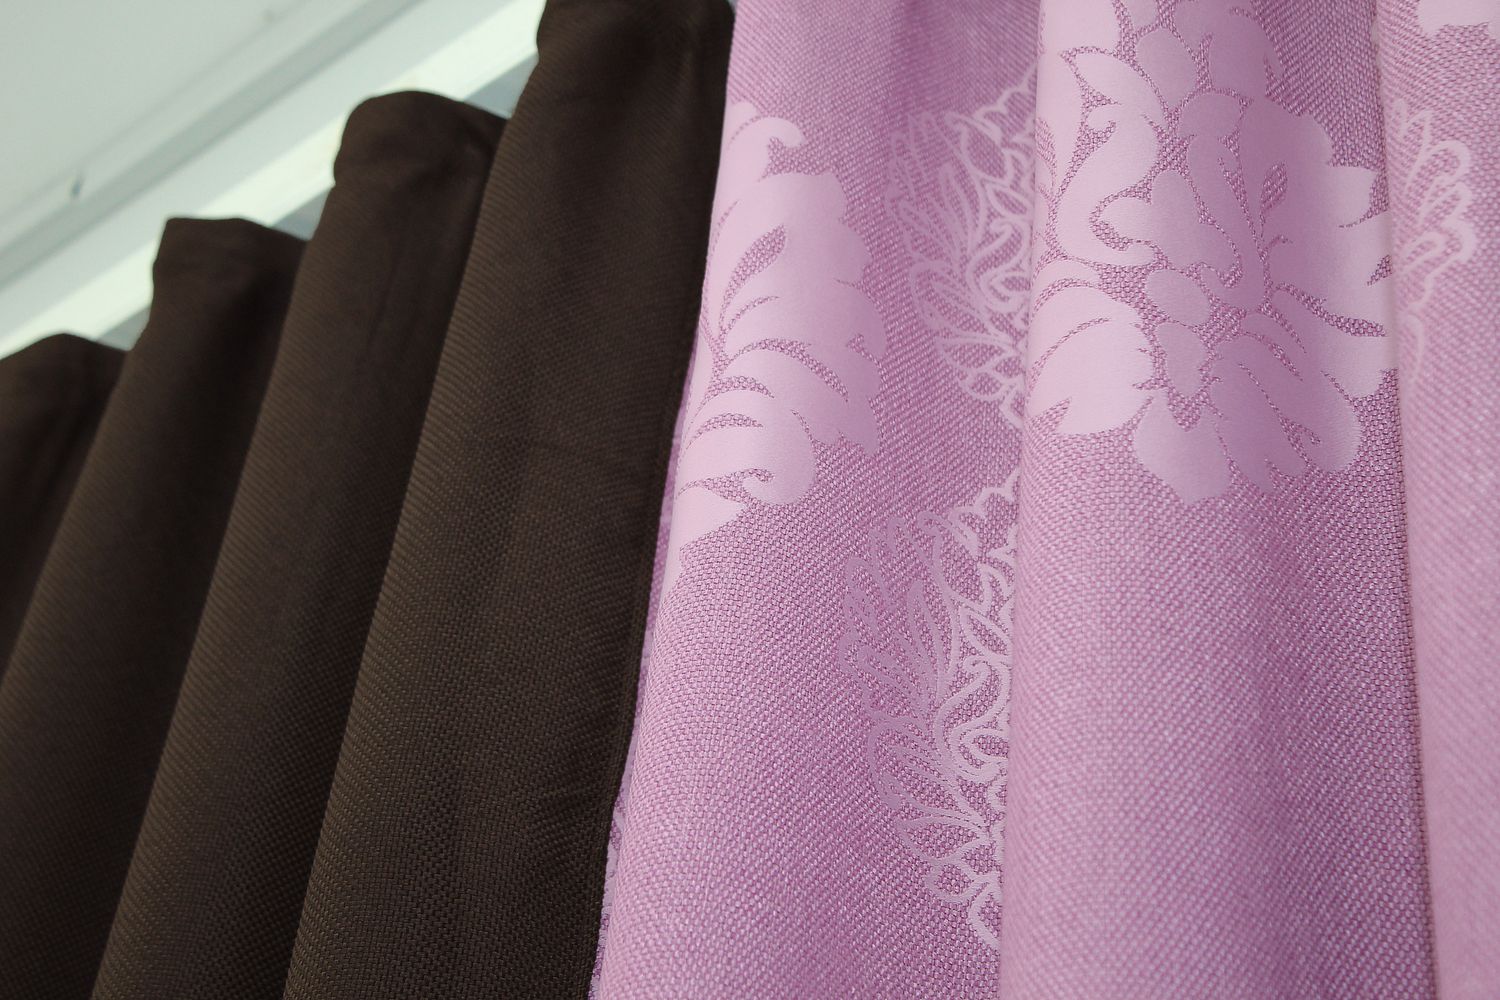 Комбинированные шторы из ткани лён-блэкаут цвет венге с розовым 014дк (291-1128ш), Венге с розовым, Комплект штор (2 шт. 2,0х2,7 м.), Классические, Длинные, 2 м., 2,7 м., 200, 270, 3 - 4 м., В комплекте 2 шт., Тесьма